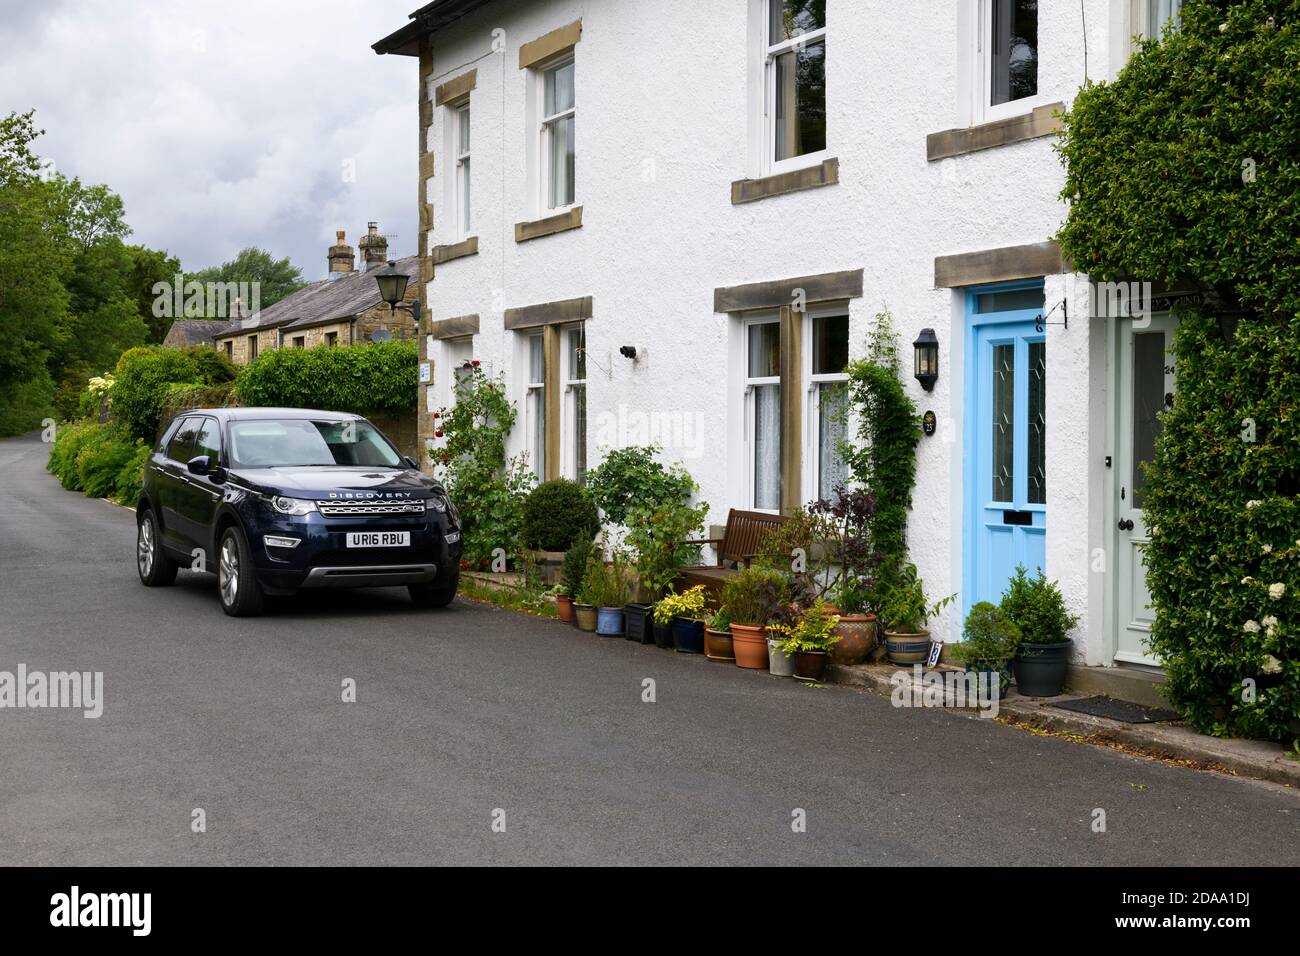 Fila de tradicionales casas de piedra blanca en el pintoresco pueblo rural, Land Rover Discovery Sport estacionado en la carretera - Linton, North Yorkshire Inglaterra Reino Unido. Foto de stock